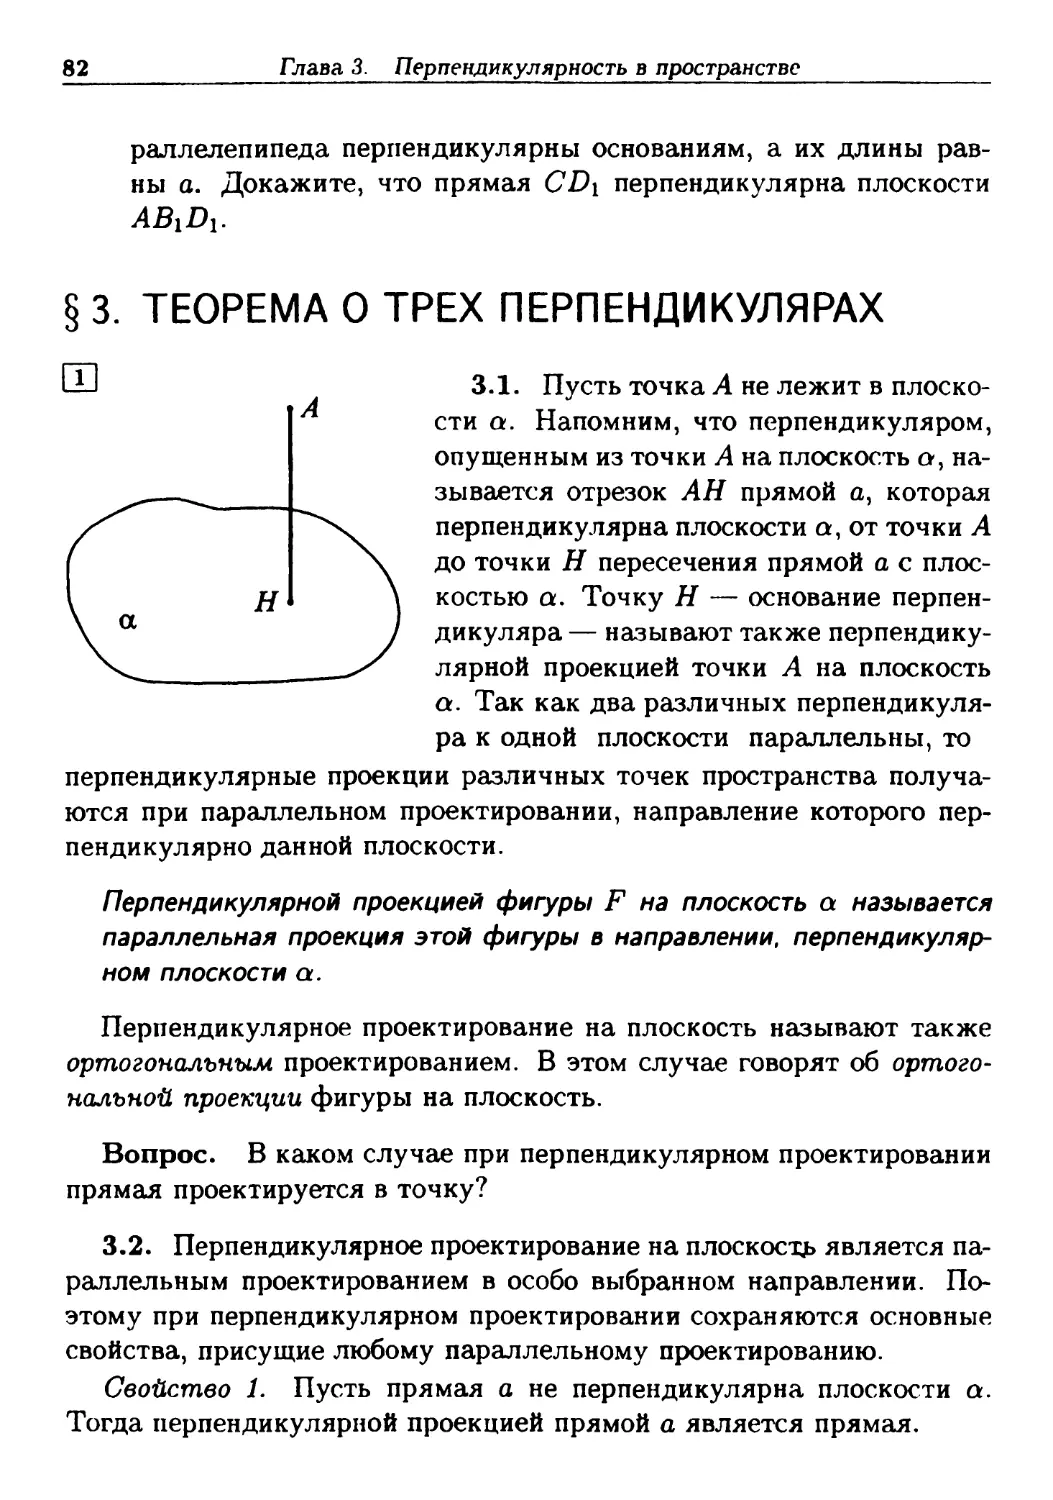 §3. Теорема о трех перпендикулярах